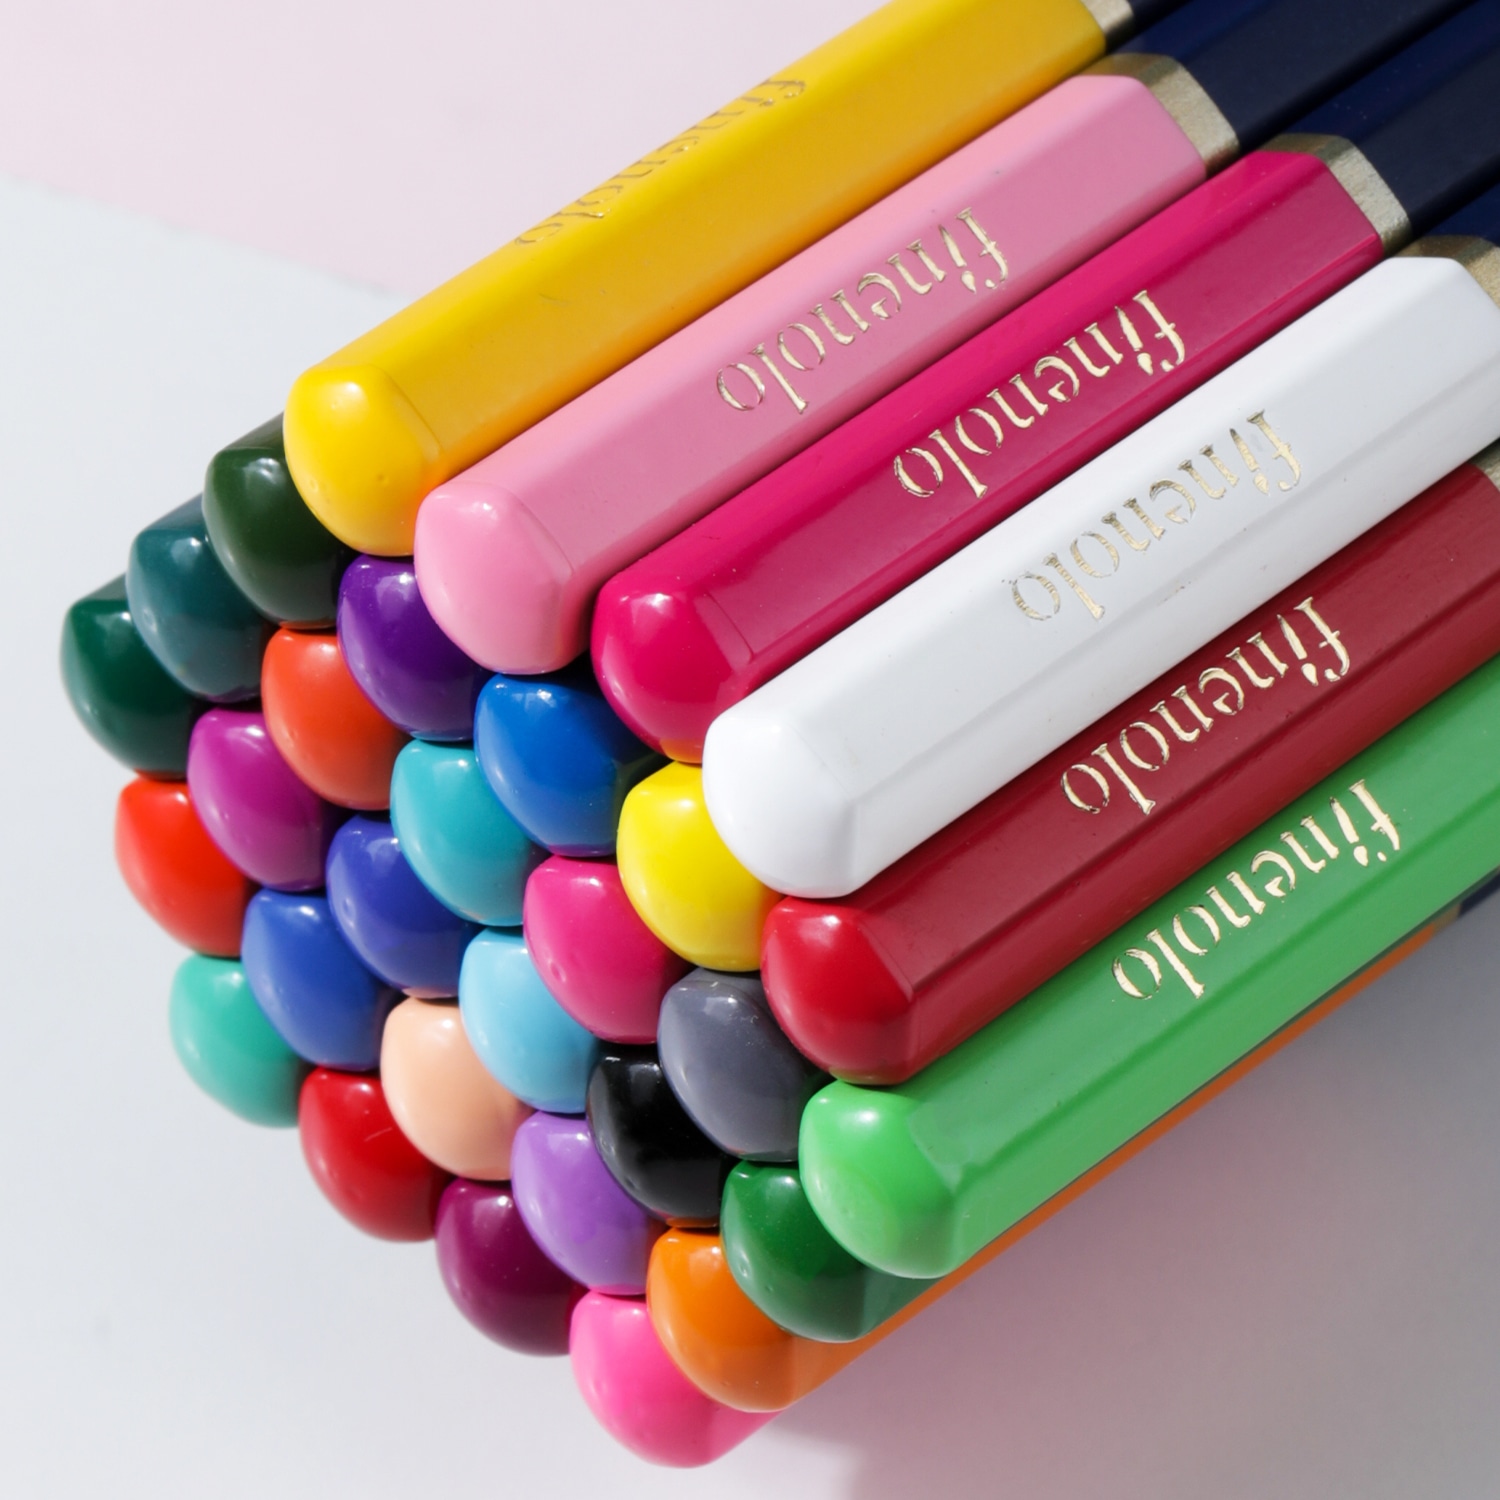 Набор цветных карандашей Finenolo 72 цвета в металлическом пенале